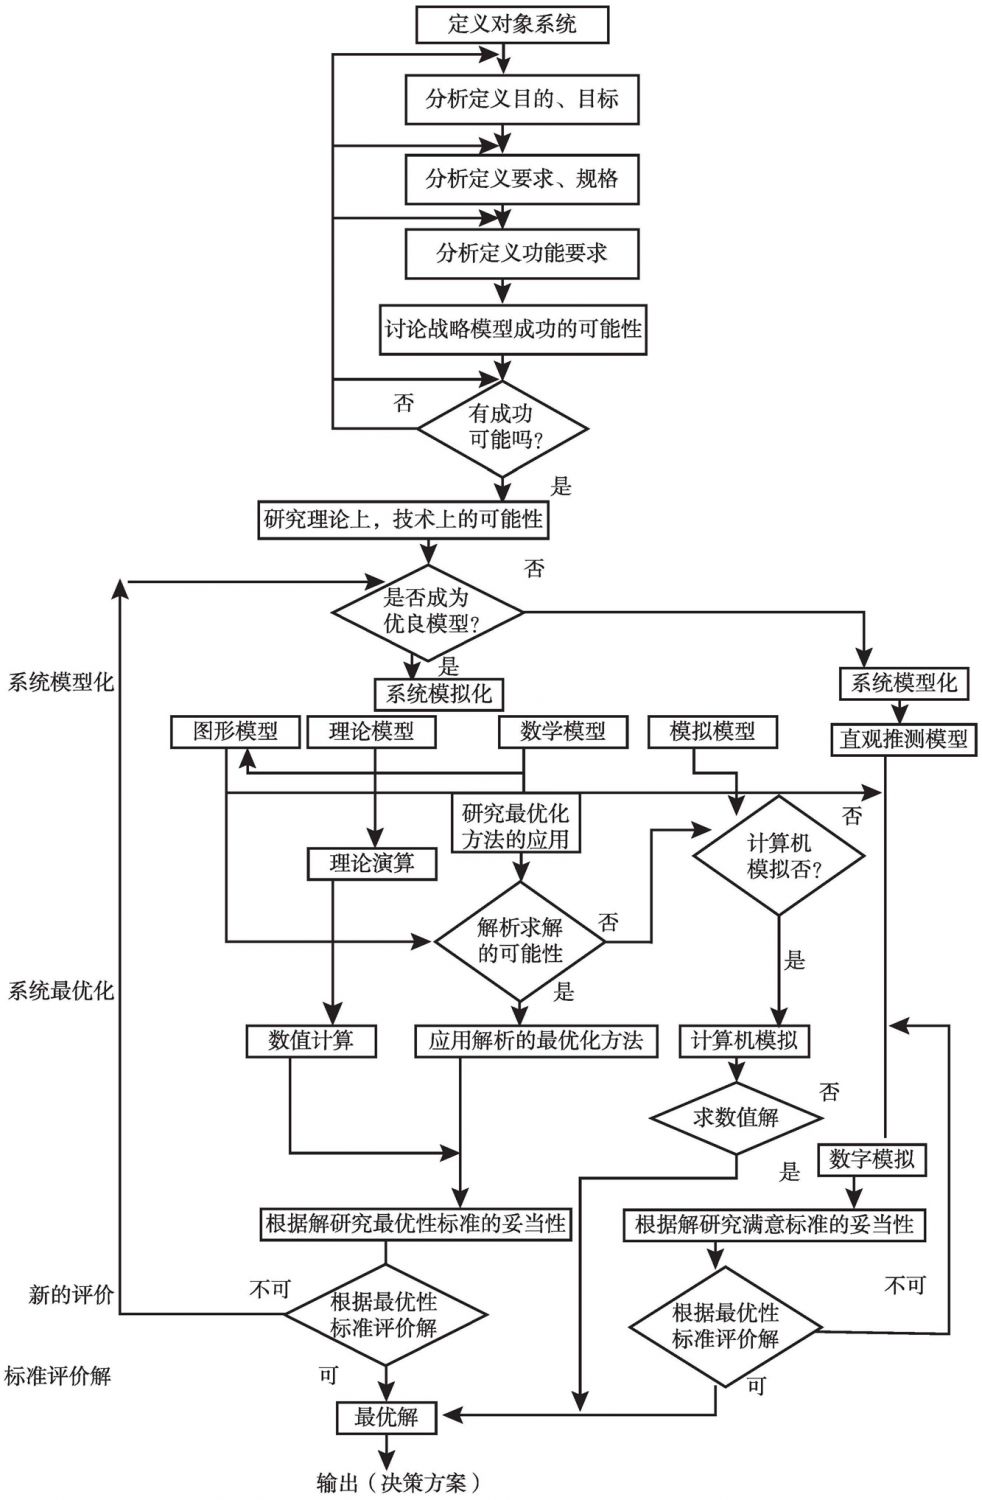 图7-9 系统工程决策分析程序